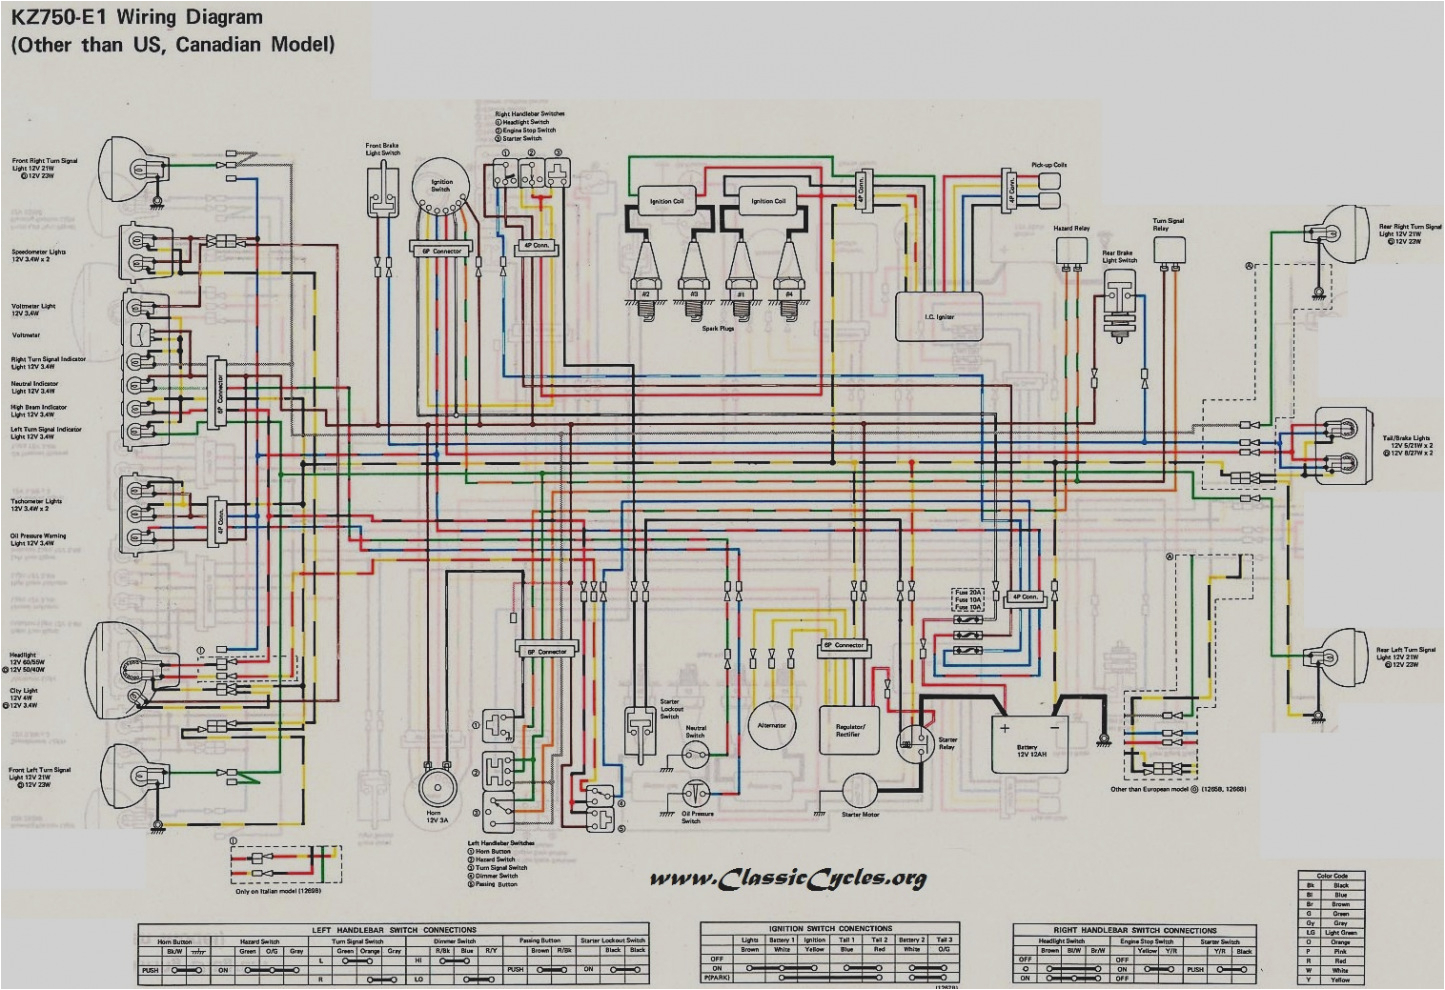 kz550 wiring diagram unique kz550 wiring diagram collection